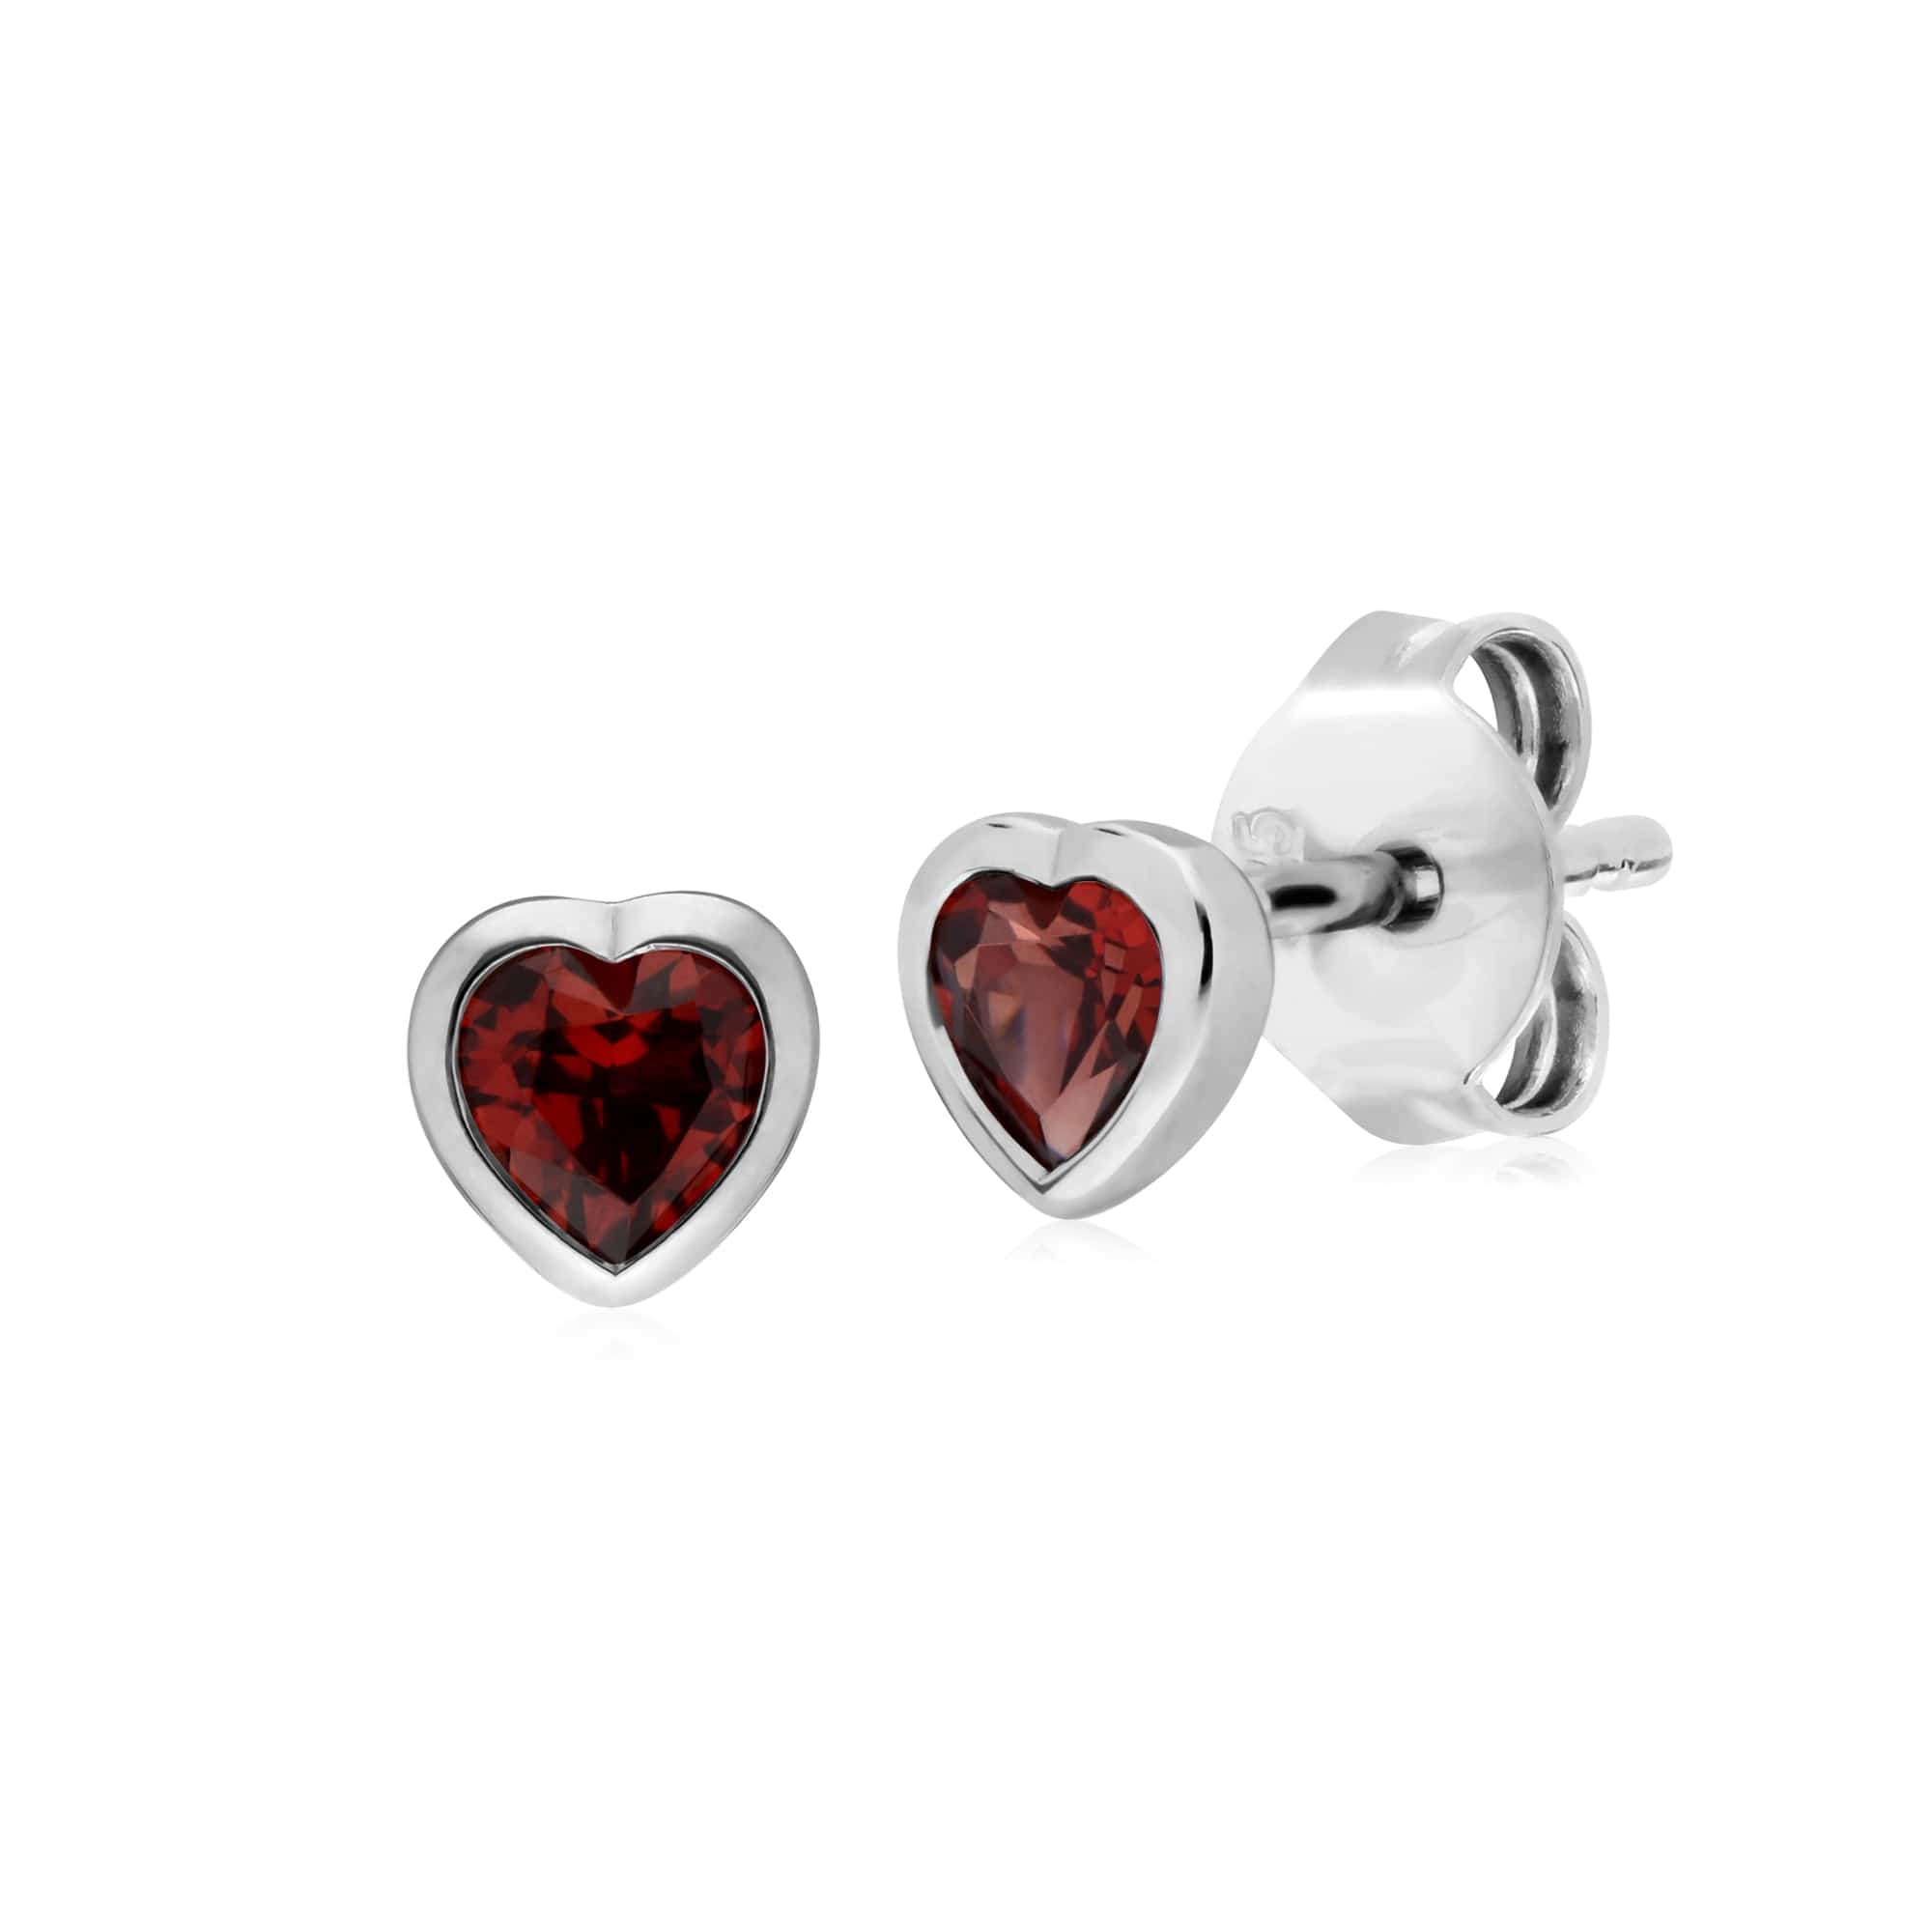 270E026103925-270P028703925 Classic Heart Garnet Stud Earrings & Pendant Set in 925 Sterling Silver 2